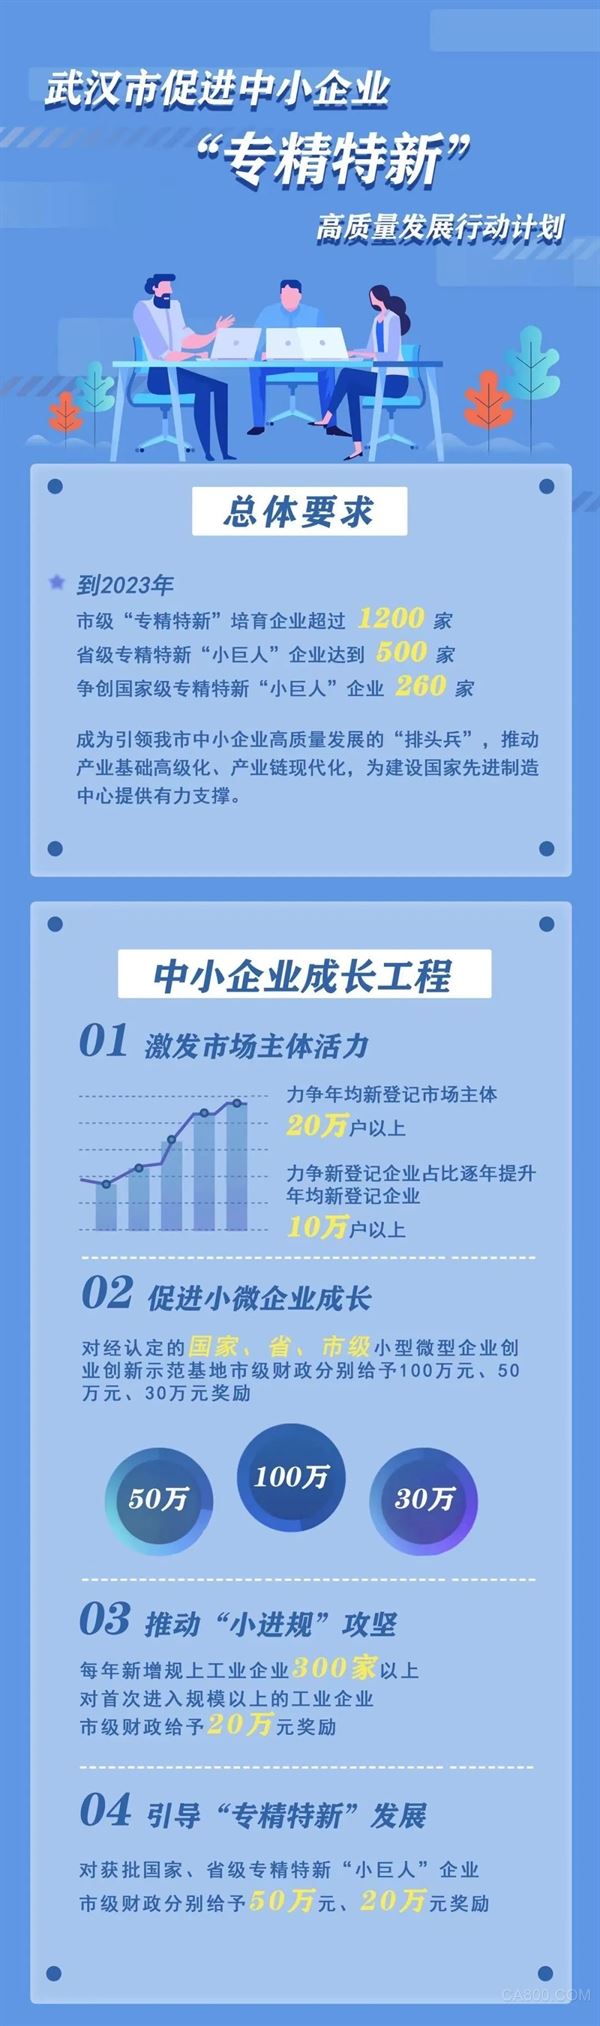 武汉发布促进中小企业“专精特新”高质量发展行动计划